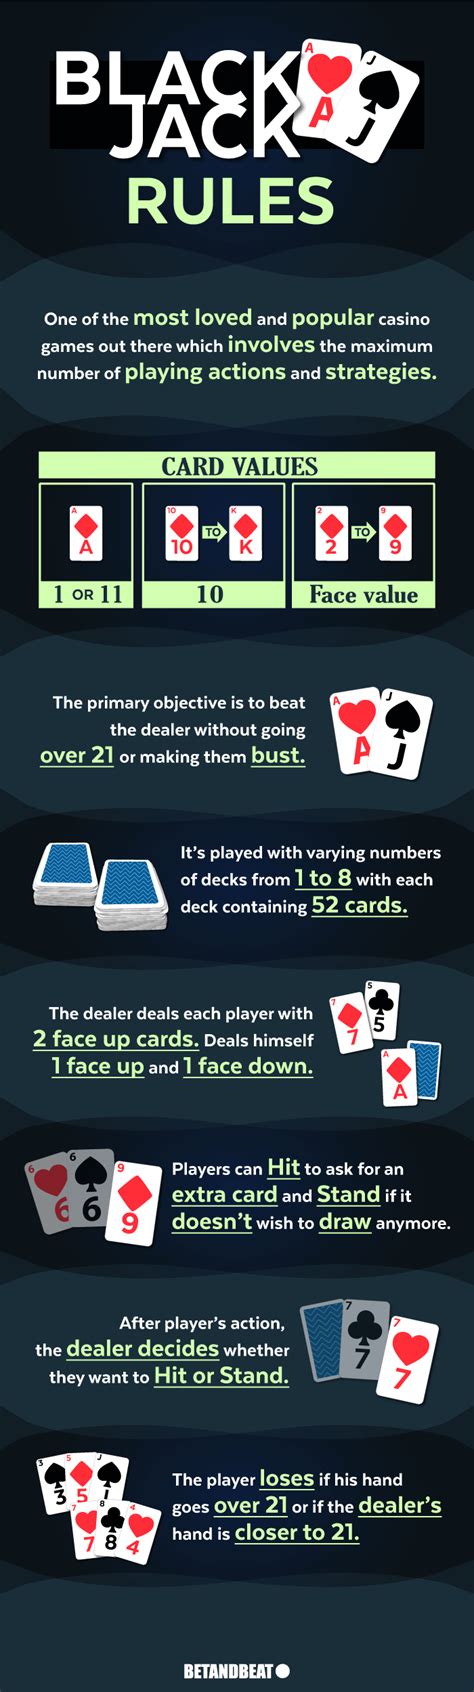 blackjack card rules